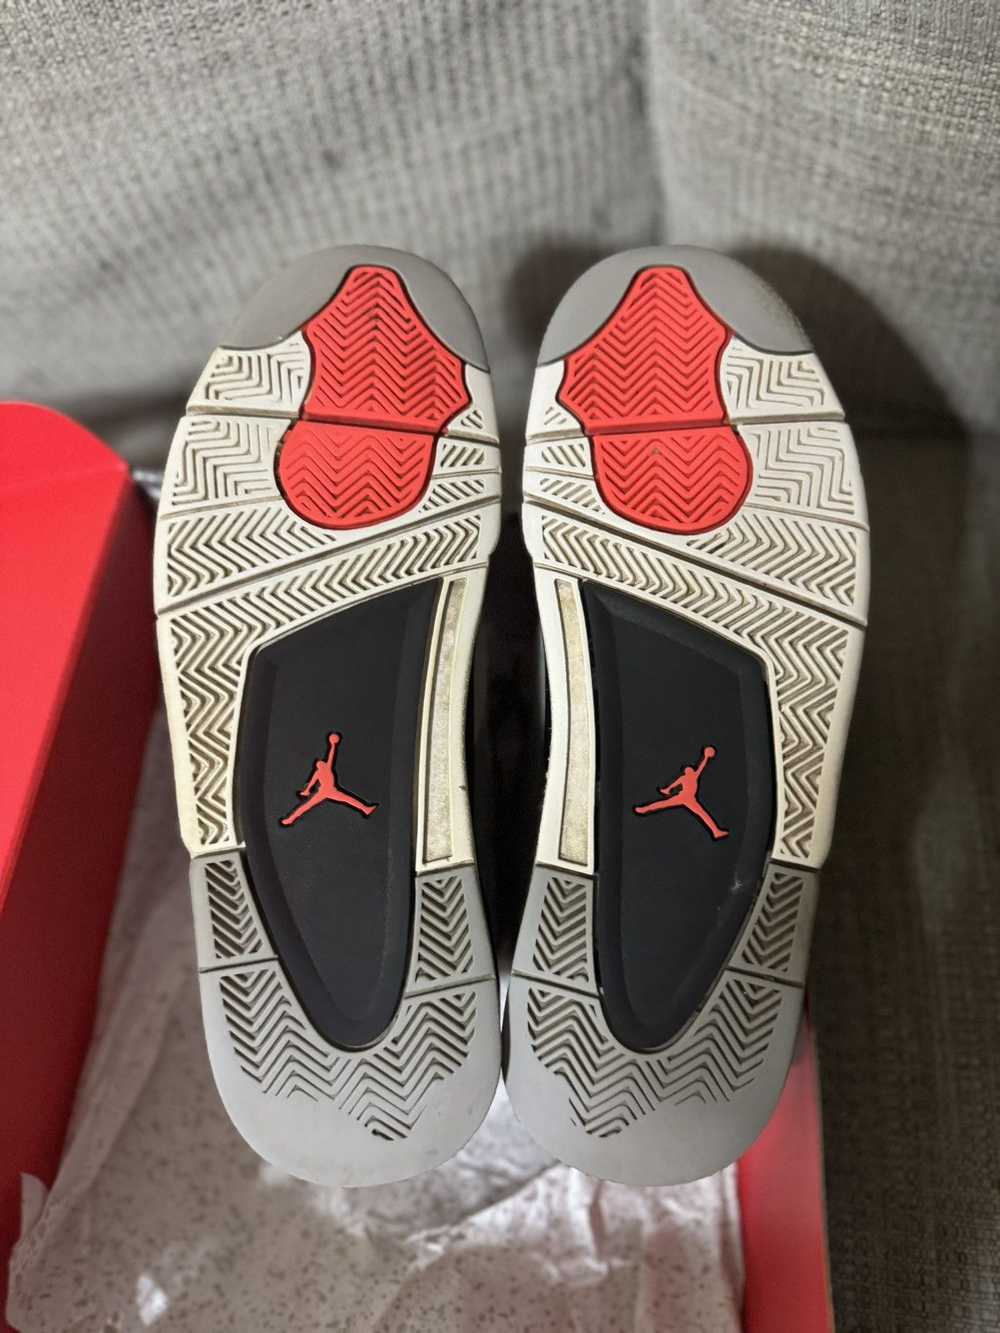 Jordan Brand × Nike × Sneakers Jordan 4 “Infrared” - image 10